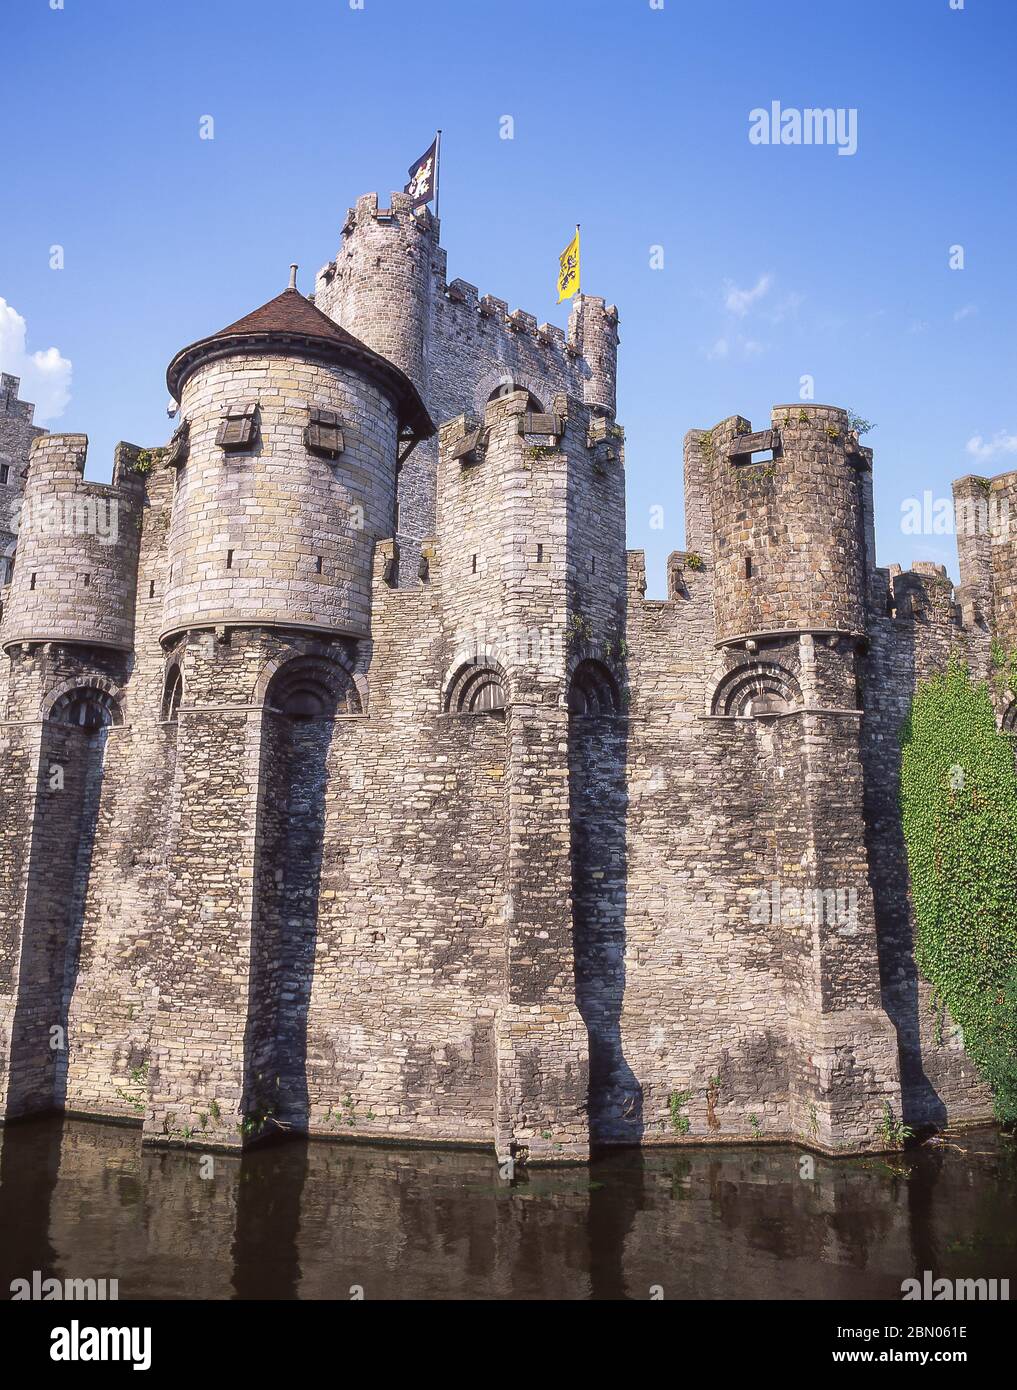 Le château médiéval de Gravensteen, Gand (Gand), province de Flandre orientale, Royaume de Belgique Banque D'Images